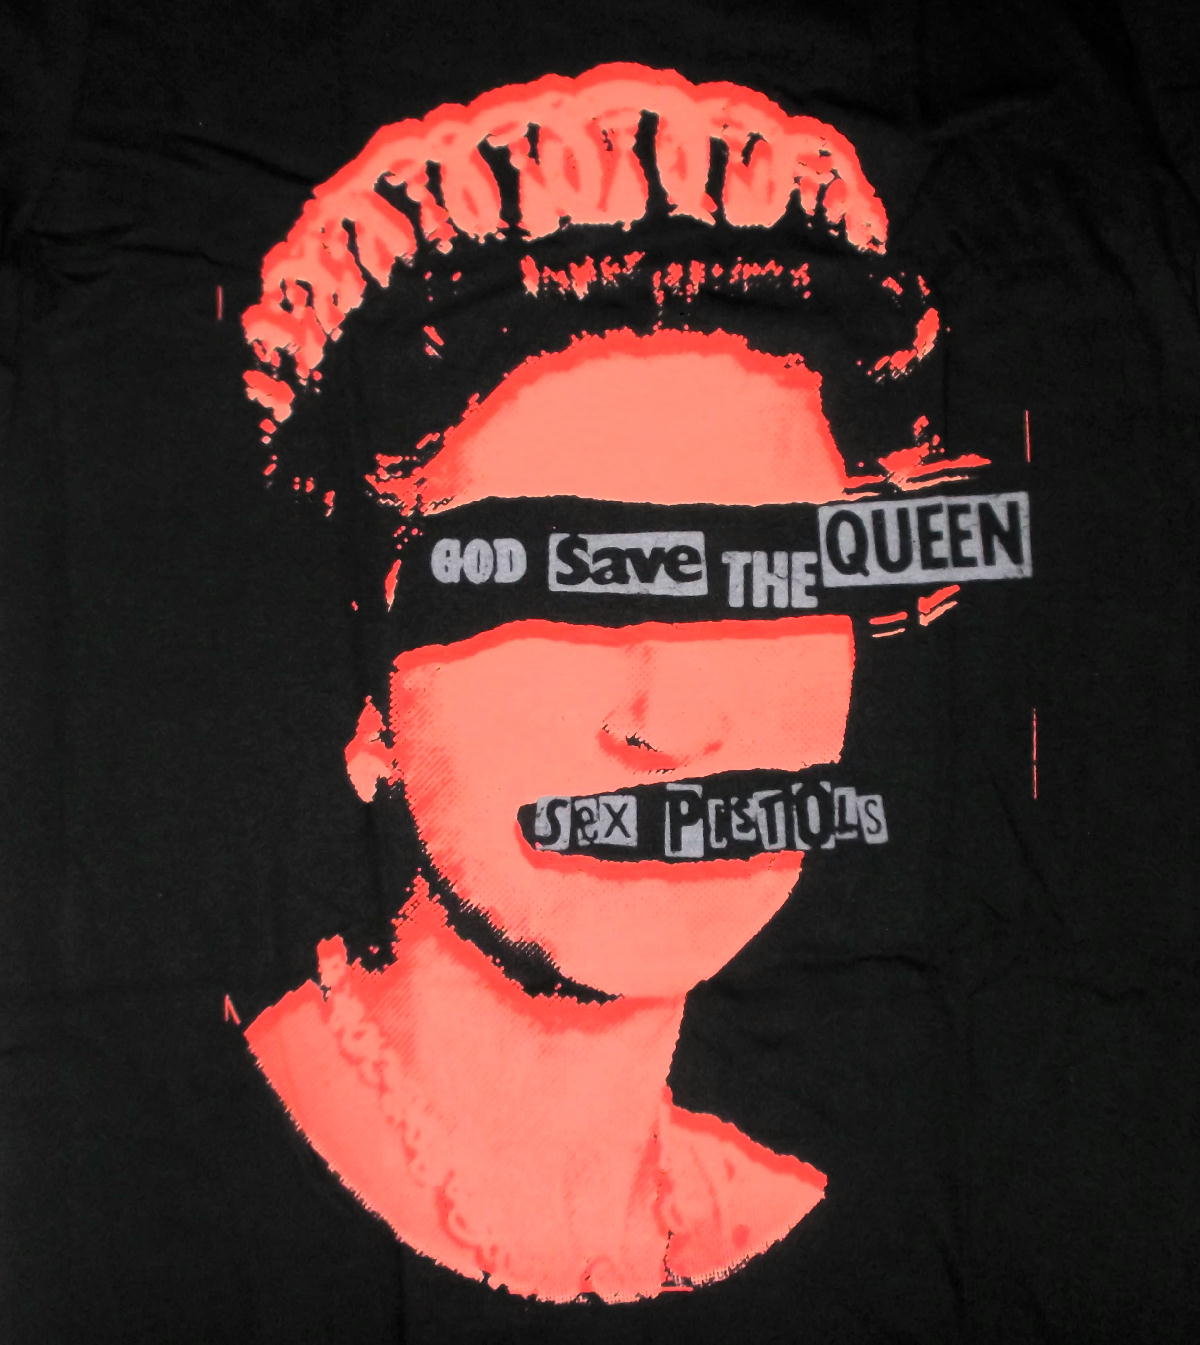 バンドTシャツ 通販 セックス ピストルズTシャツ Sex Pistols God Save The Queen 公式 パンク punk  ロックTシャツ 販売 流行 アメカジ,ジョニー ロットン,シド ヴィシャス,Sid Vicious,